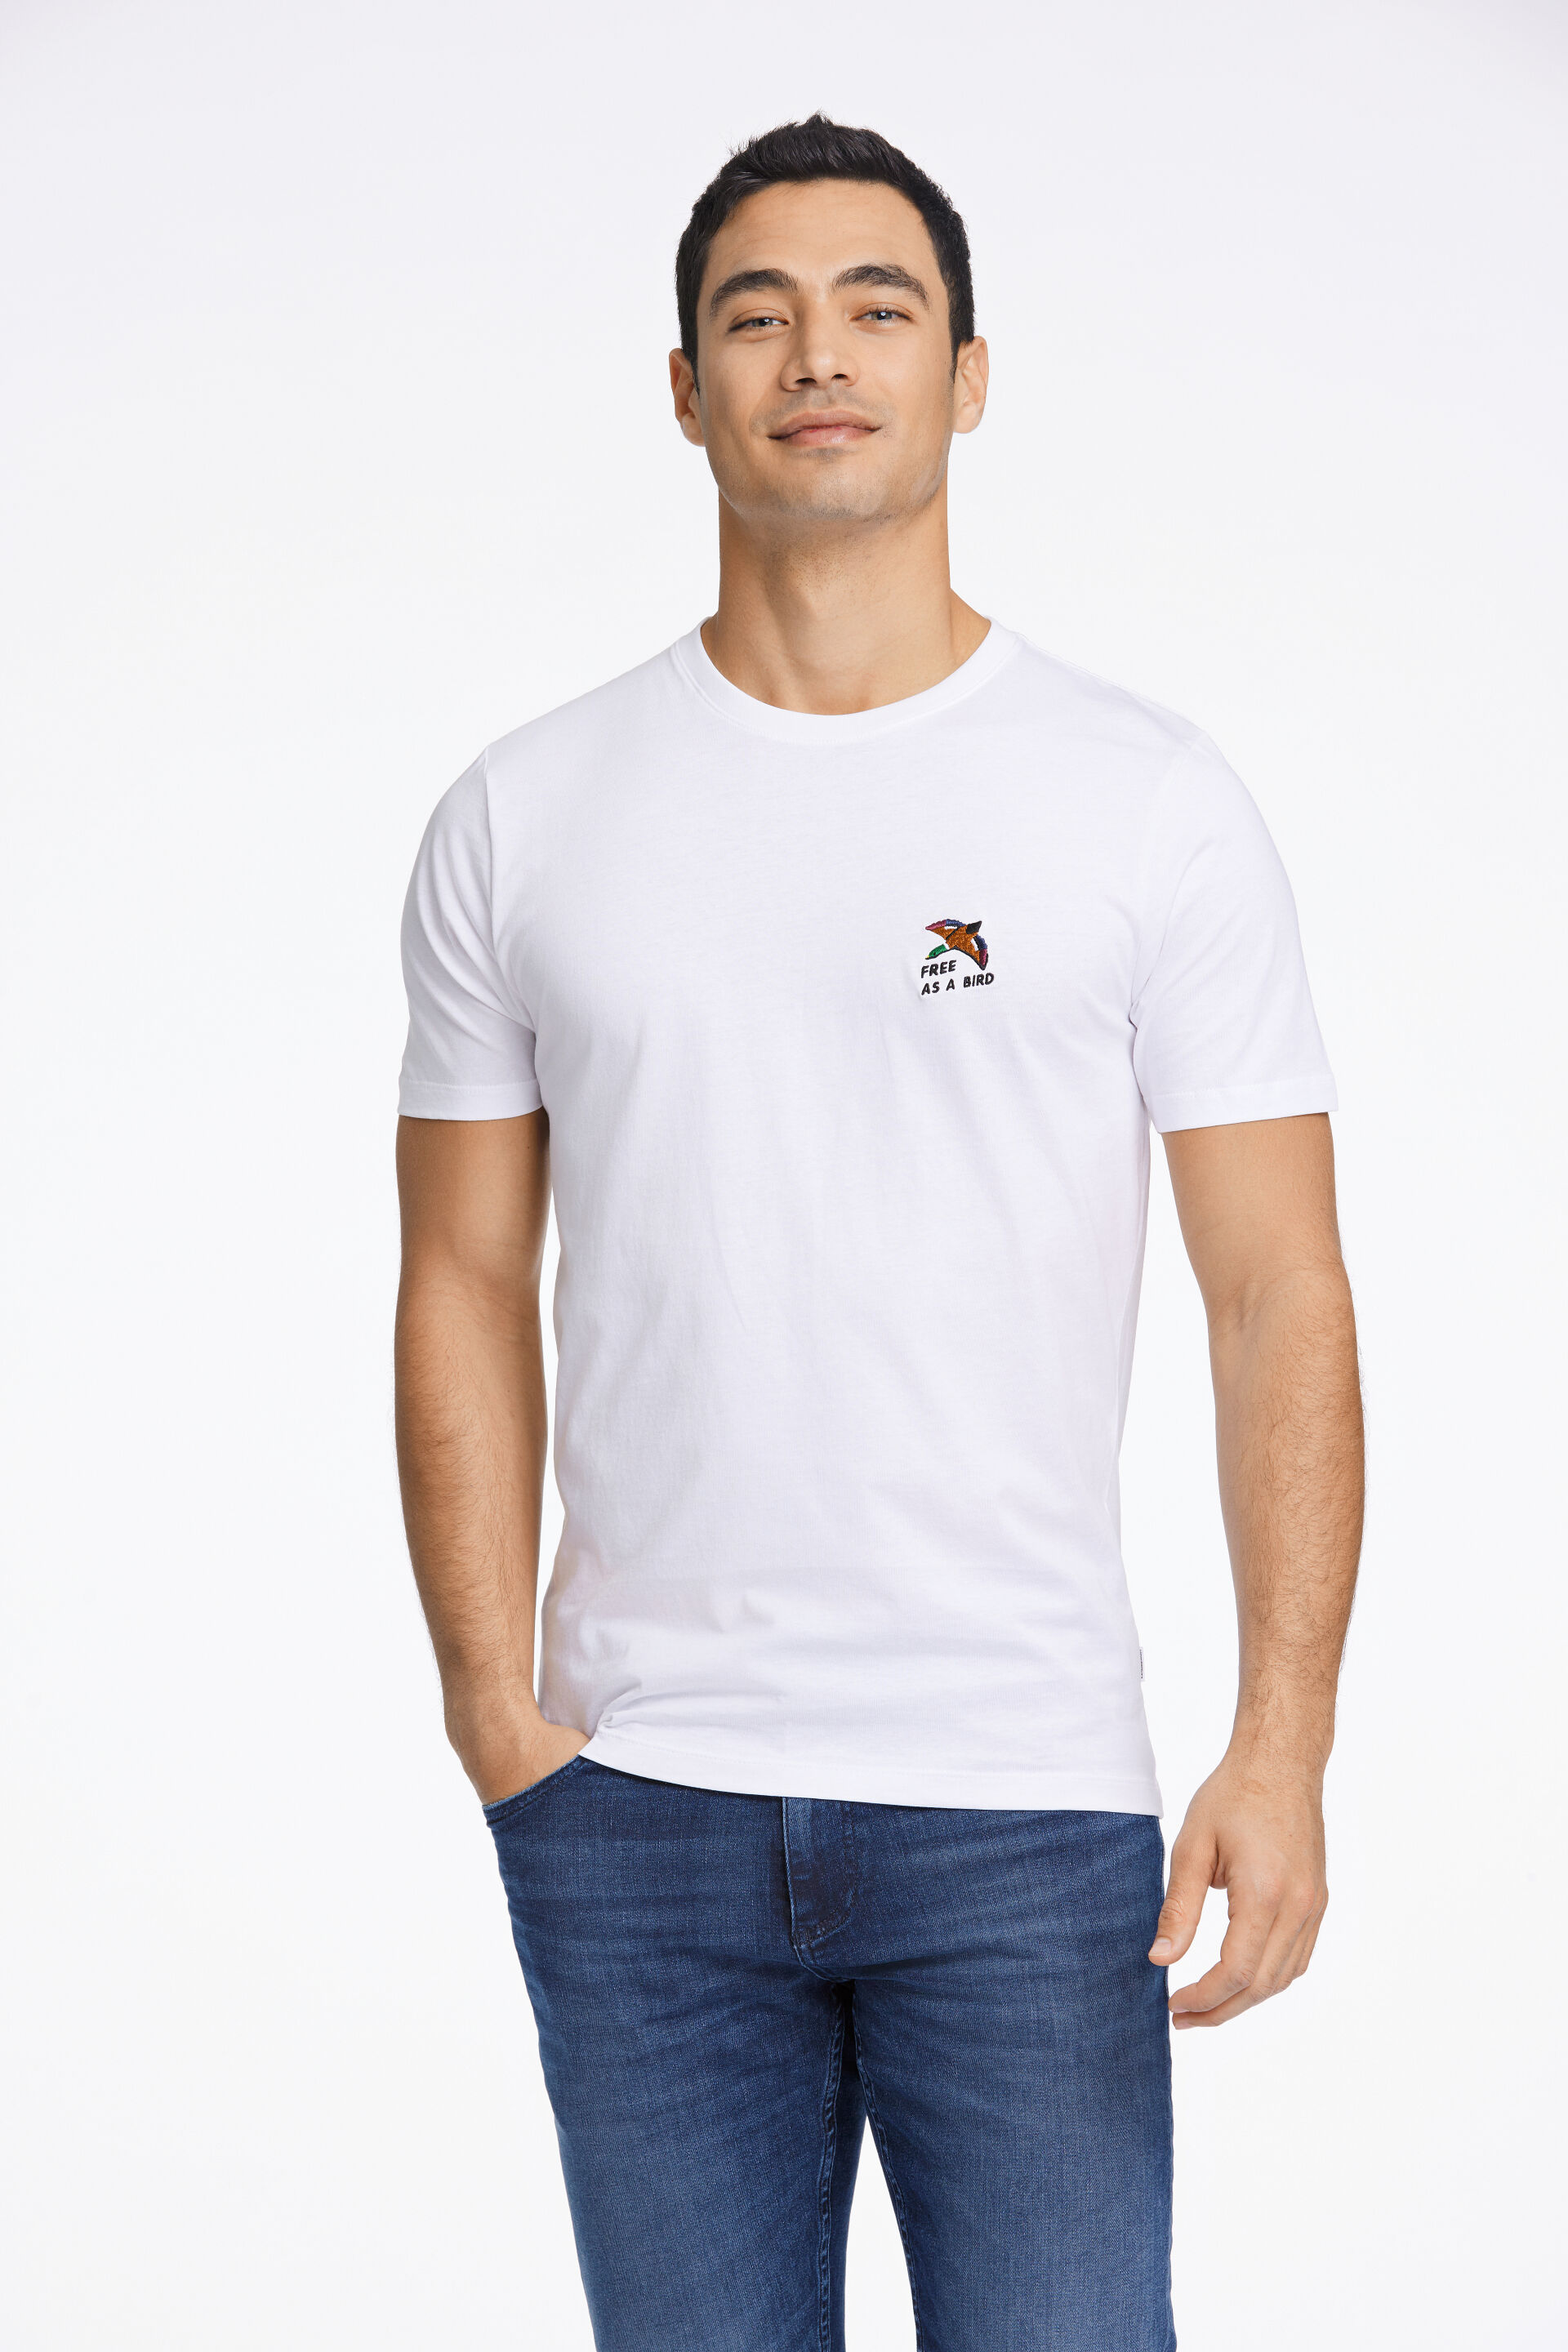 T-shirt T-shirt Weiss 30-400235